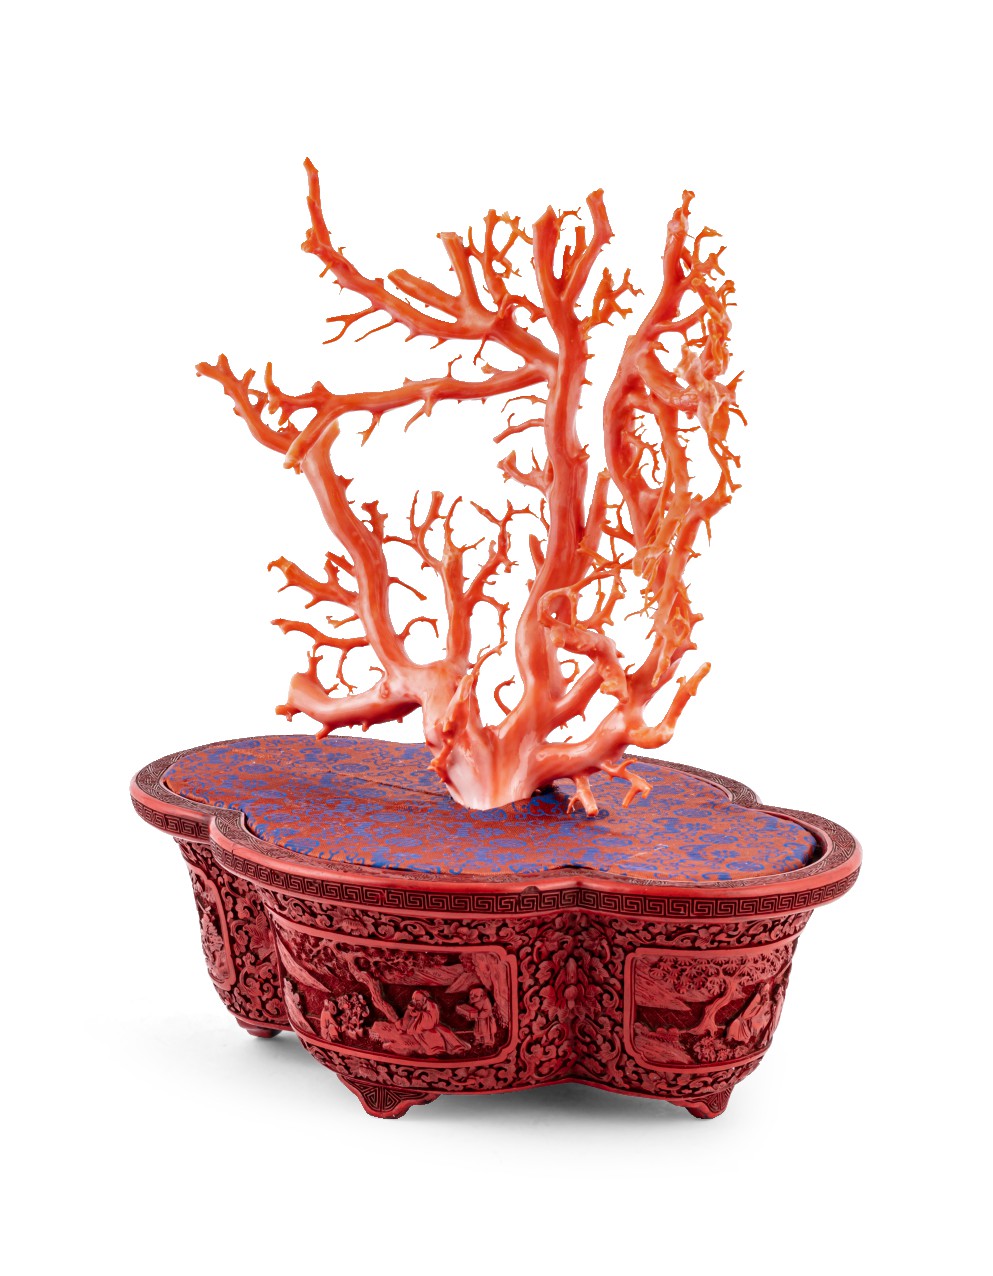 清十八至十九世紀 剔紅開光人物故事圖海棠式花盆連紅珊瑚盆景 